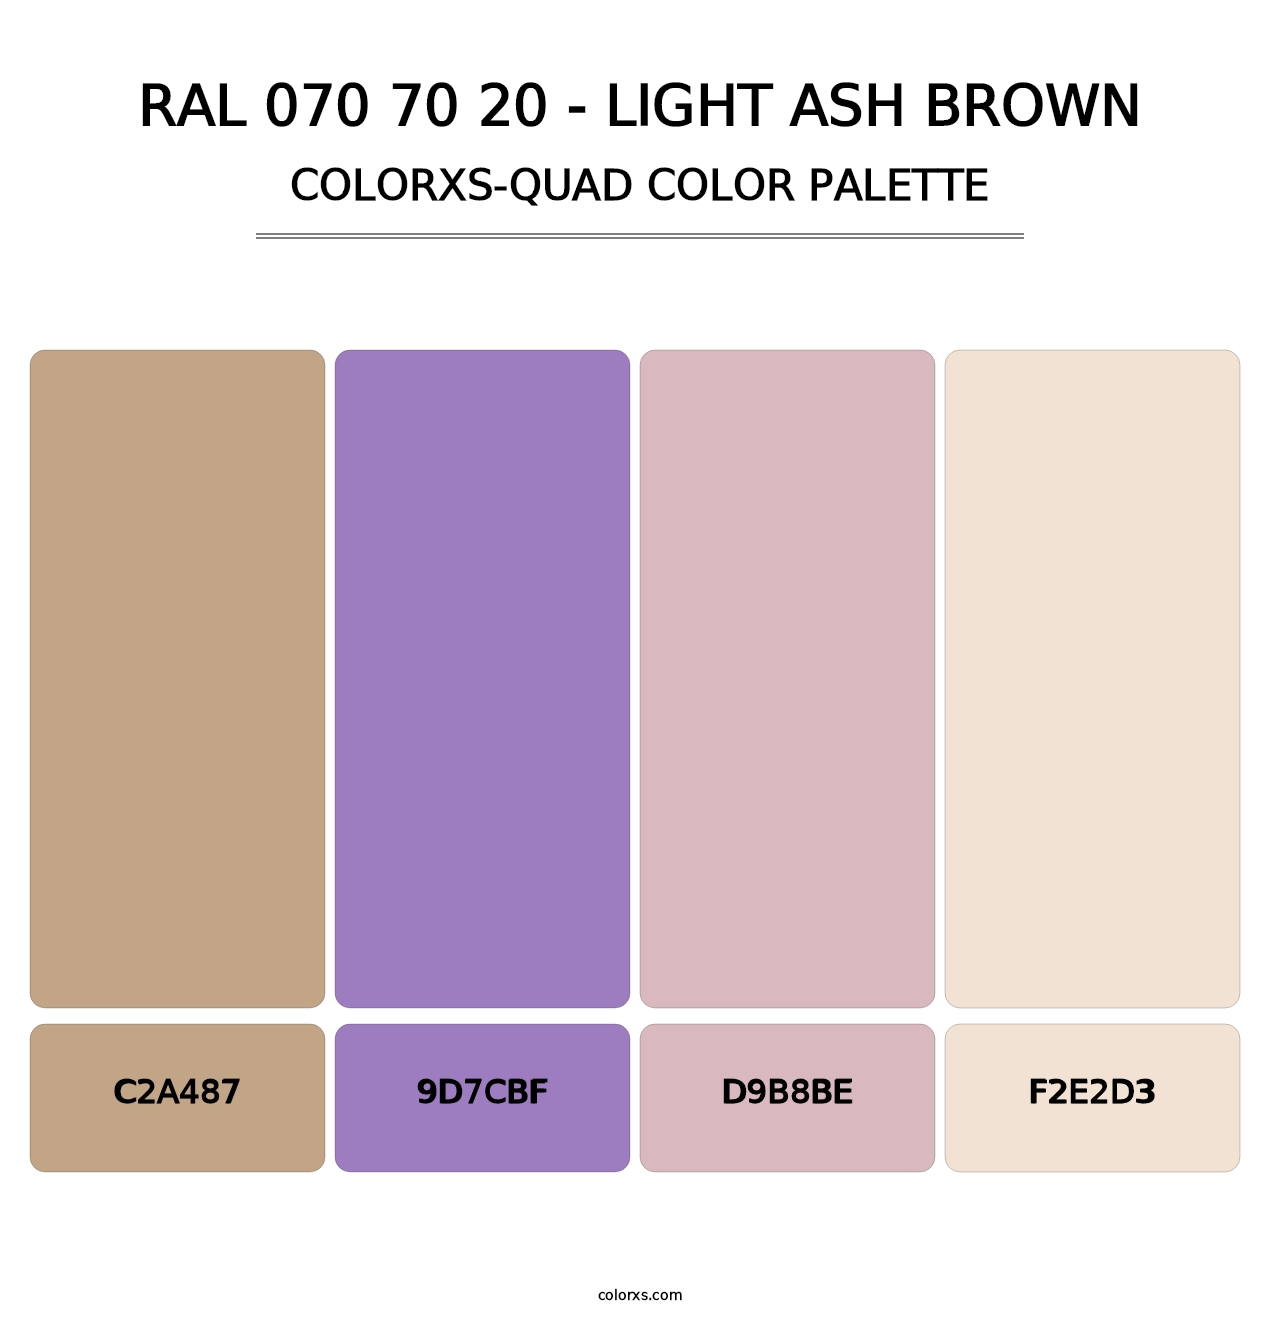 RAL 070 70 20 - Light Ash Brown - Colorxs Quad Palette